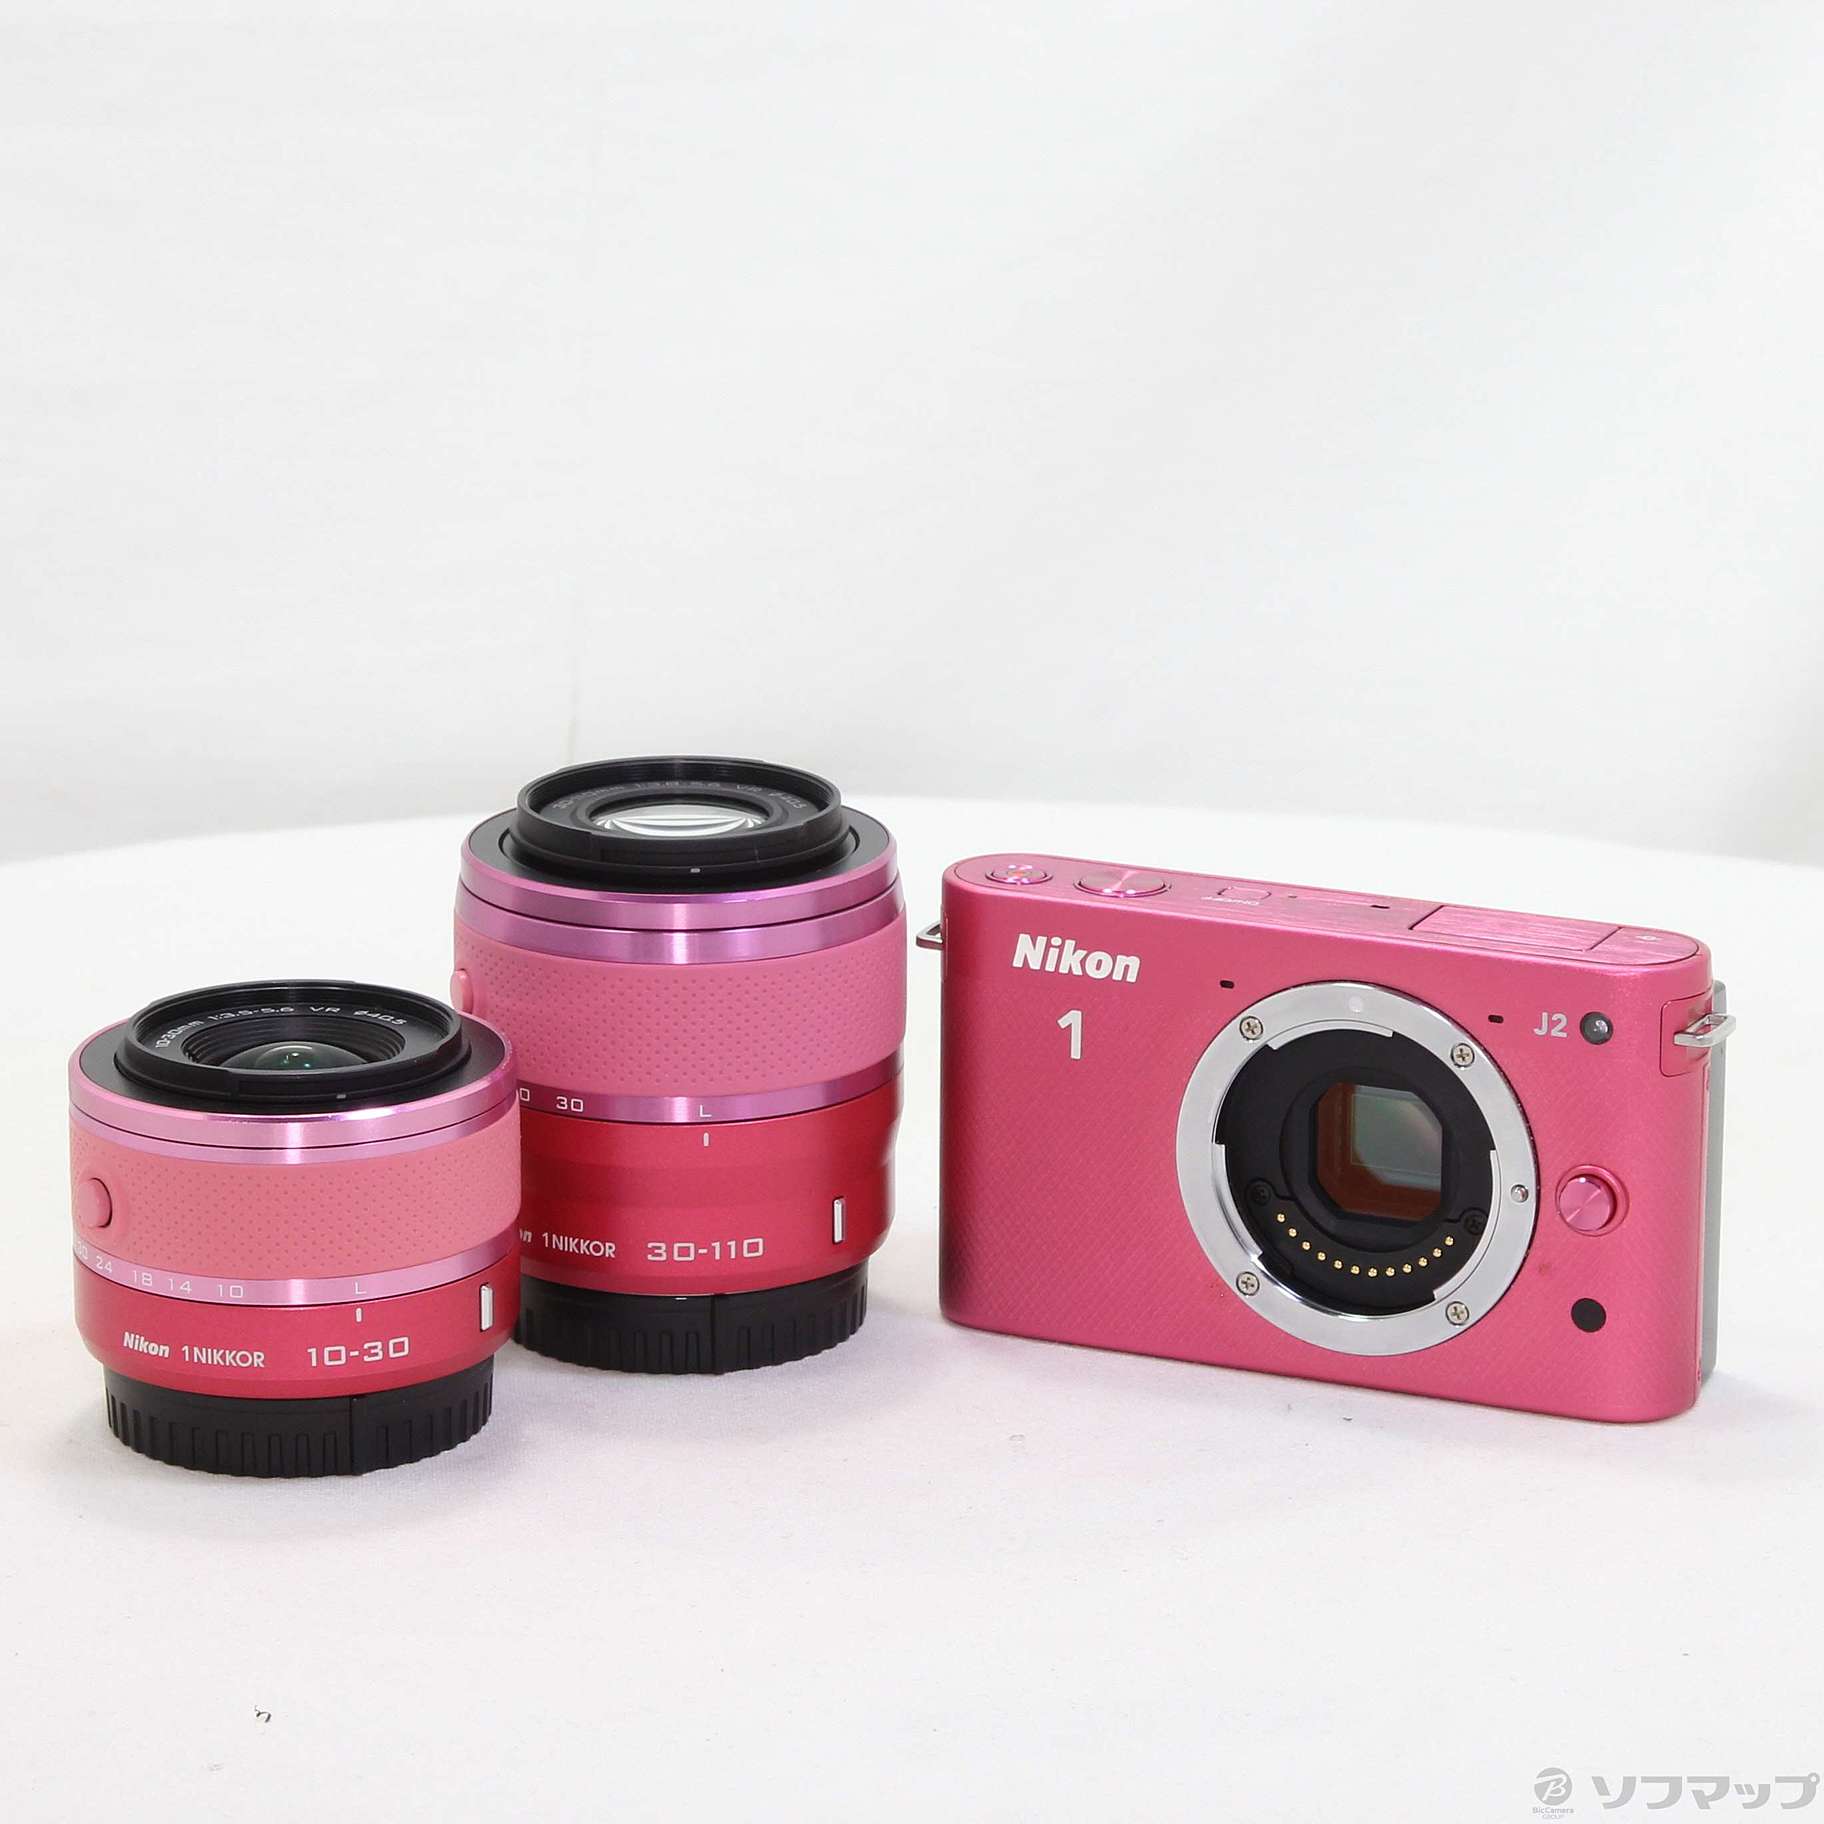 Nikon ピンク ミラーレスカメラ - デジタルカメラ